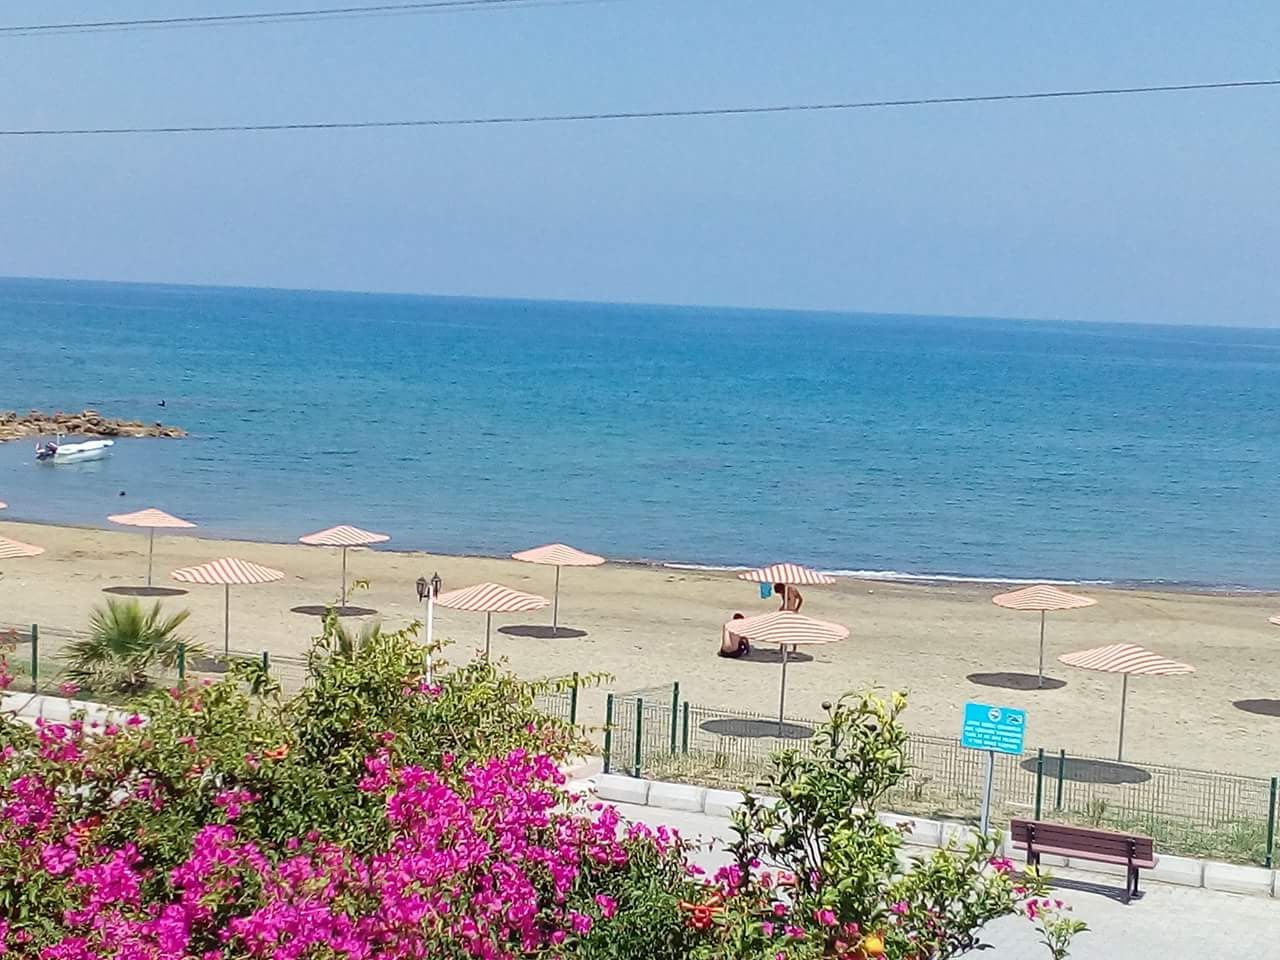 Photo of Denizkizi beach beach resort area